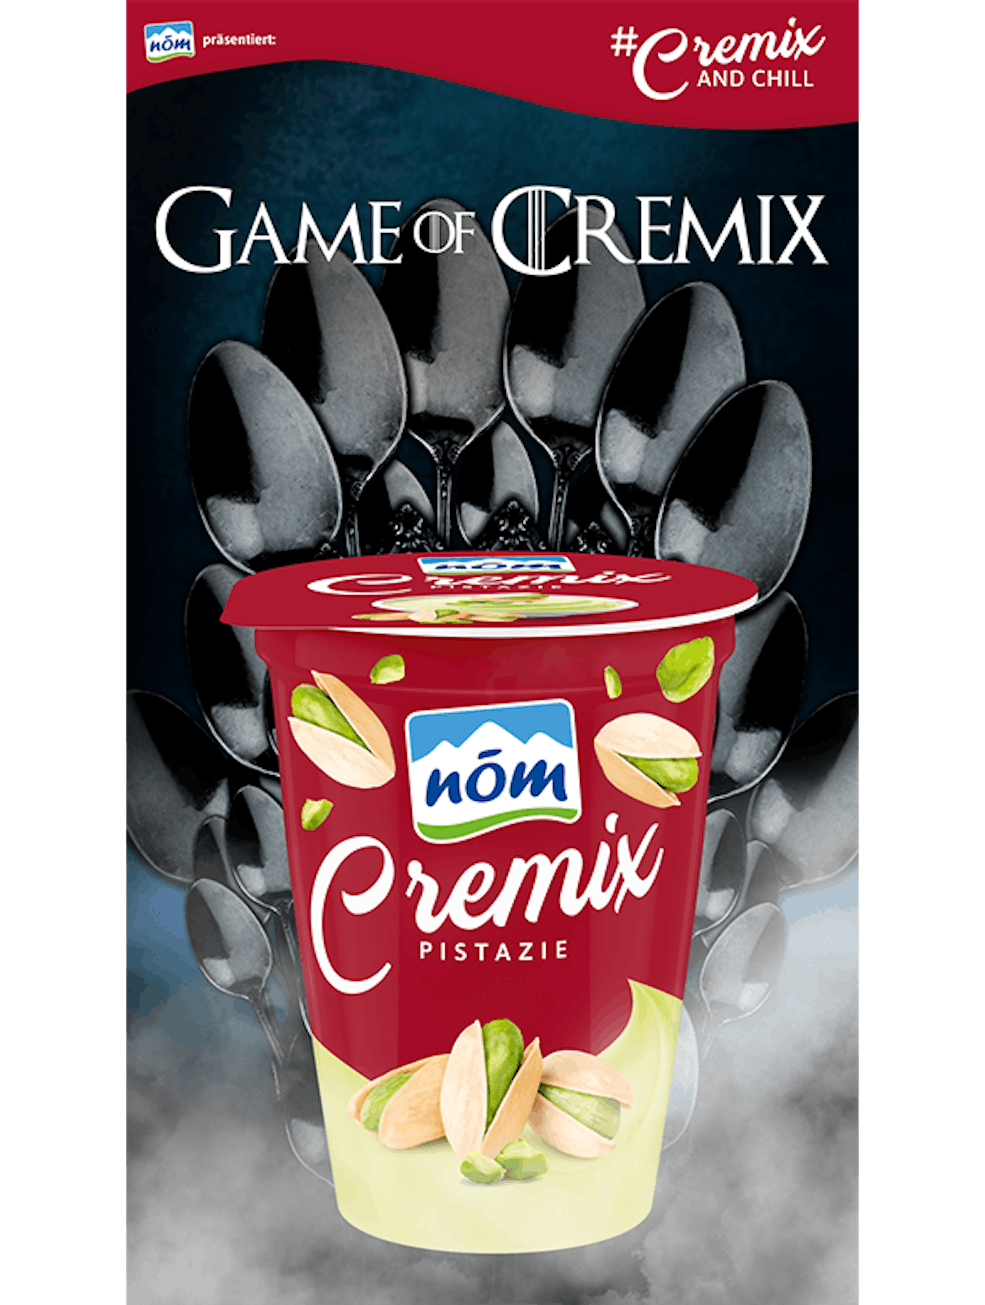 Game of Cremix